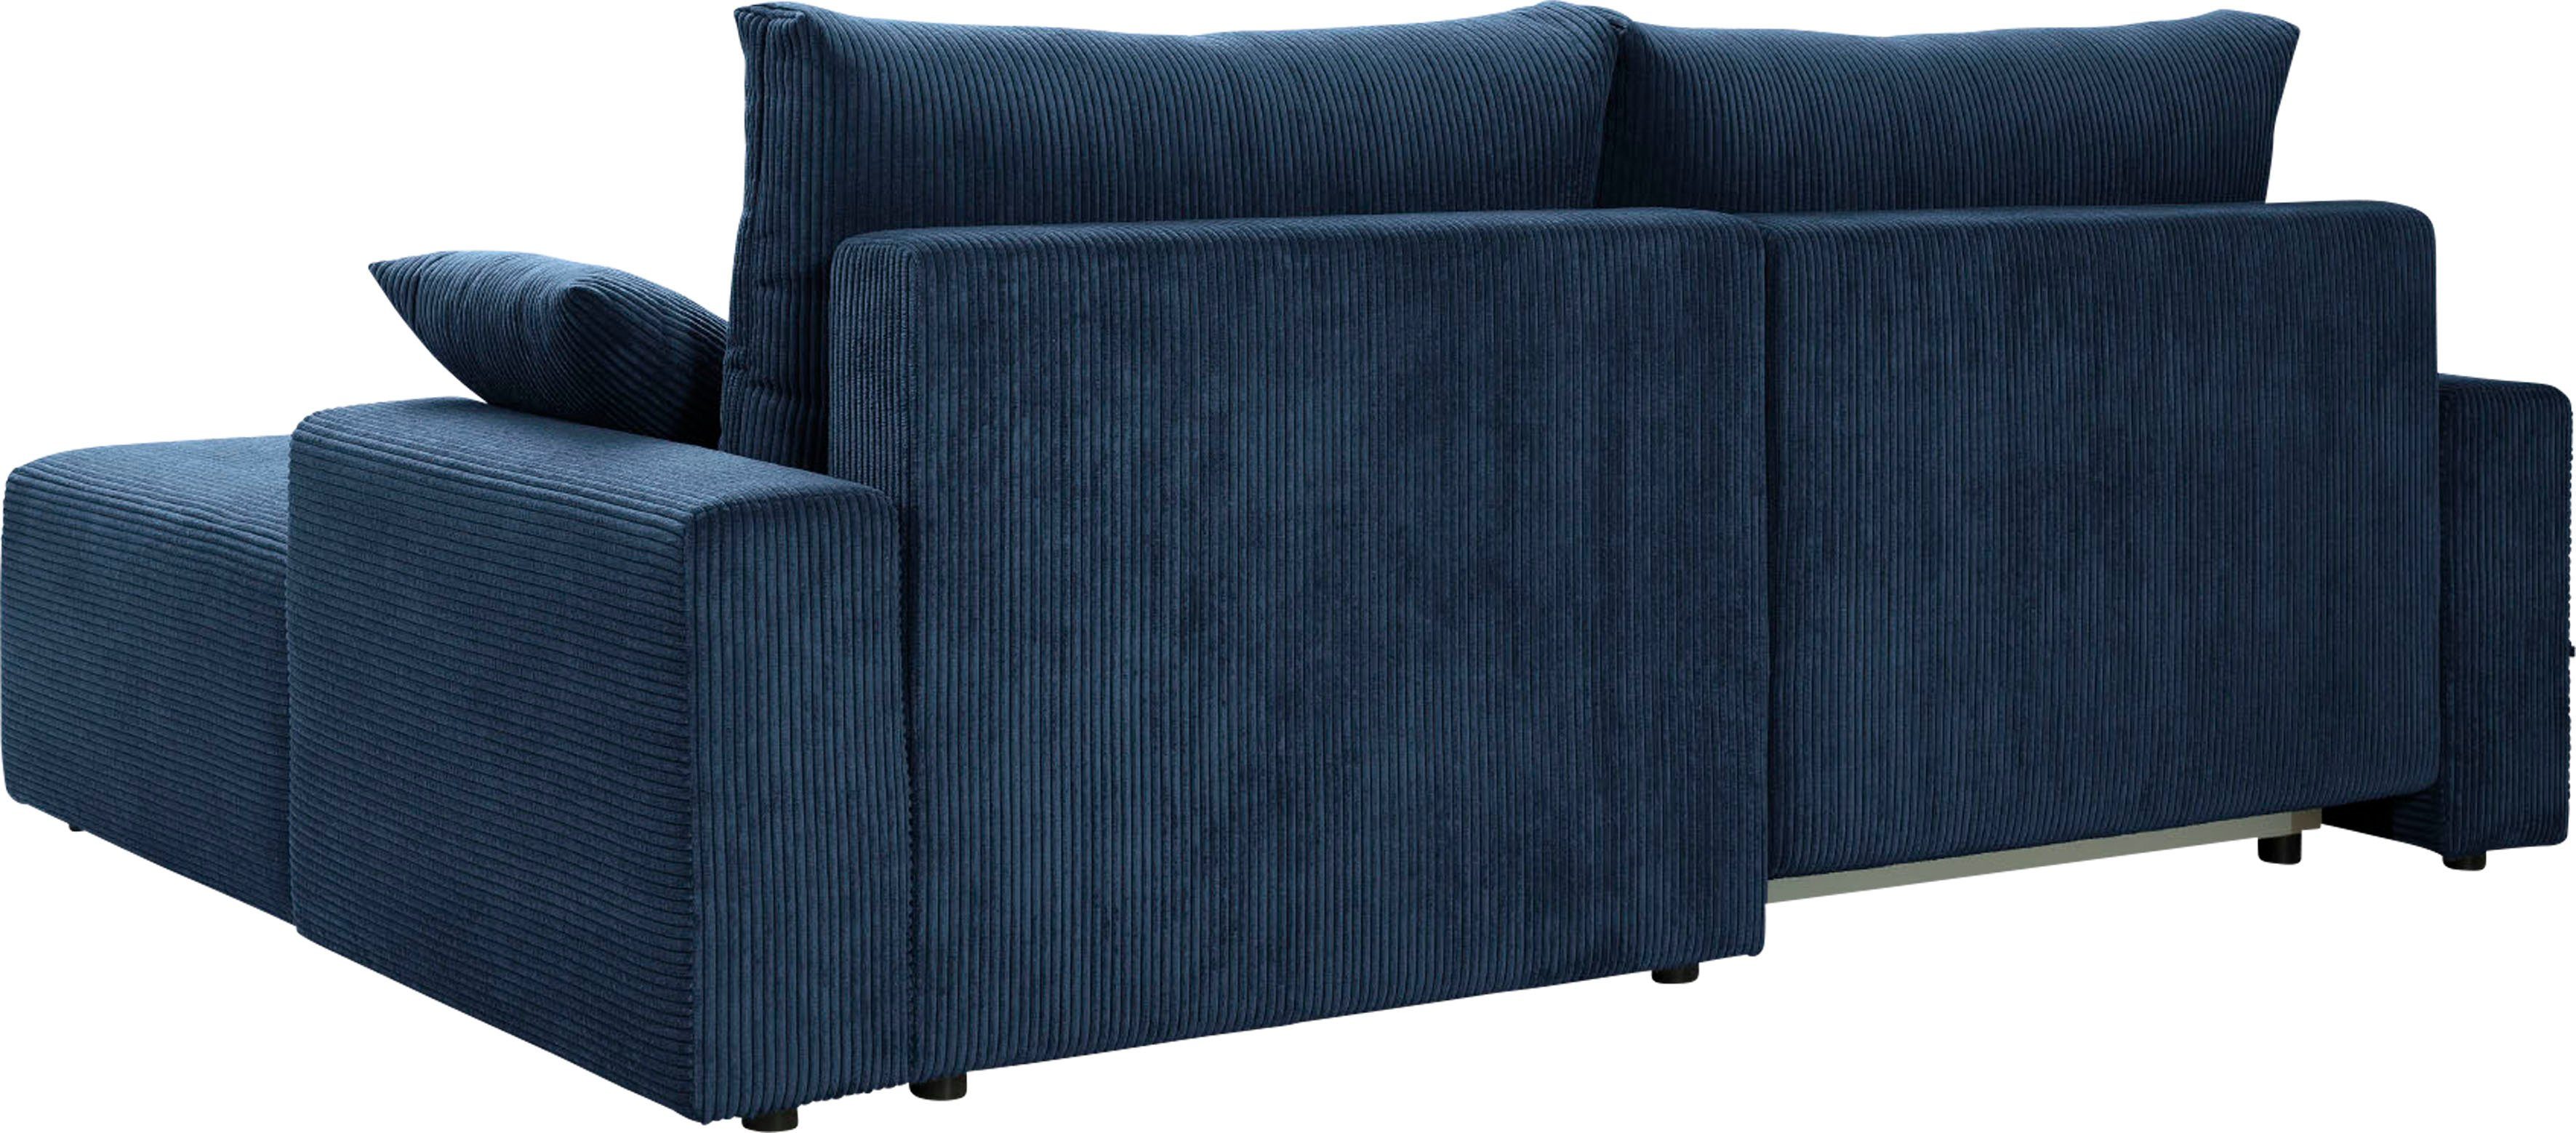 Ecksofa exxpo - fashion verschiedenen inklusive Bettkasten und Cord-Farben navy Orinoko, sofa in Bettfunktion